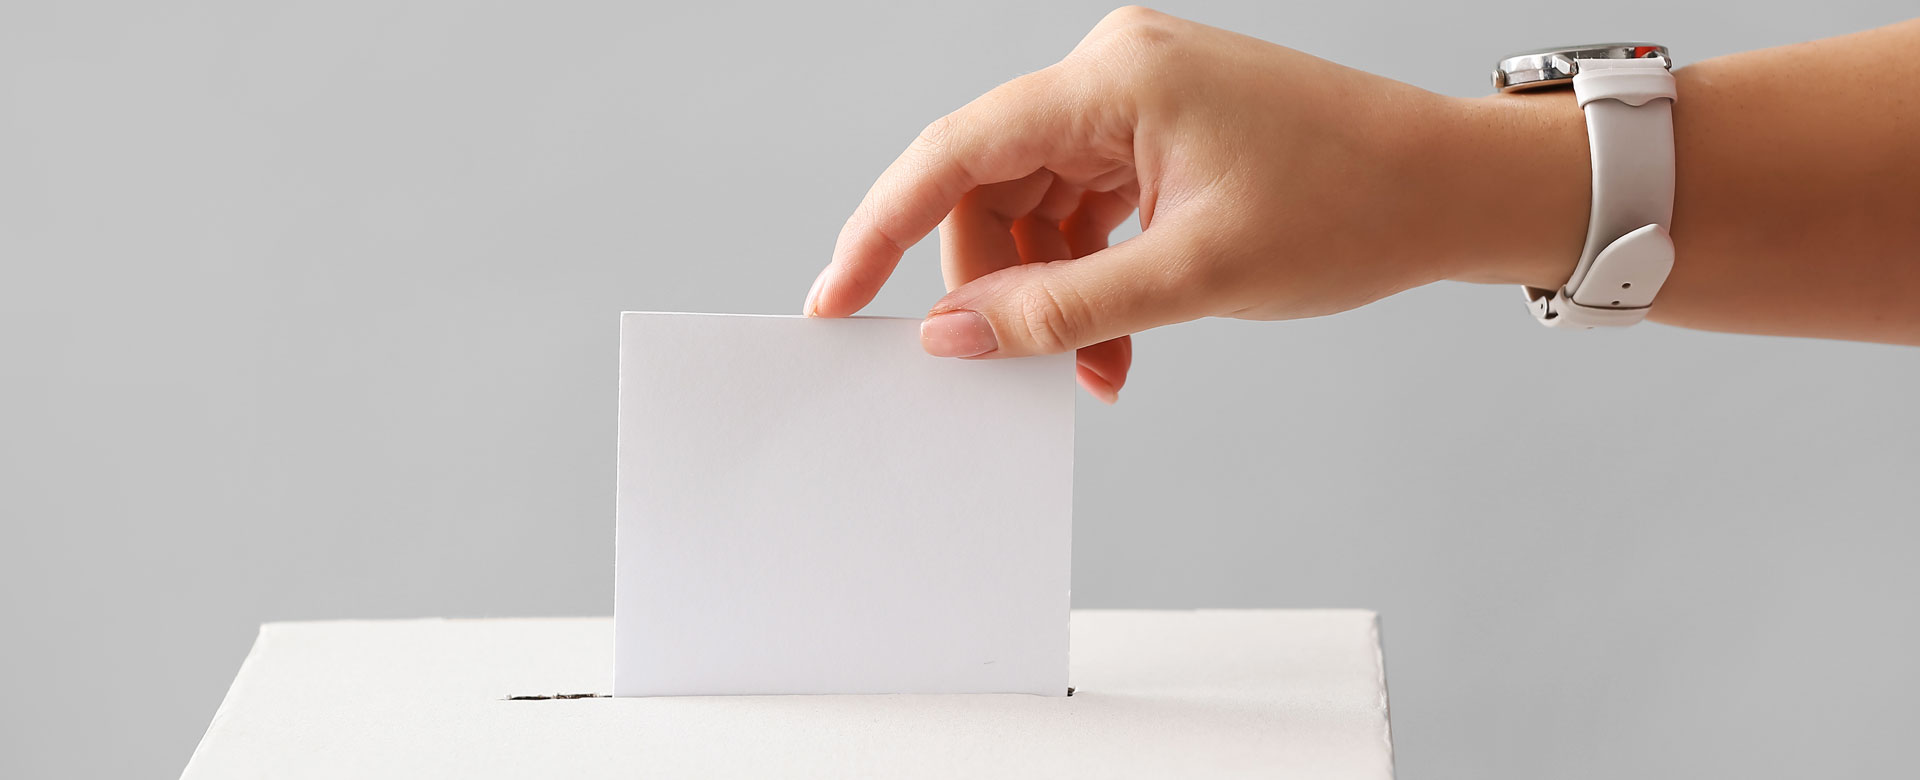 Ragazza inserisce scheda elettorale nell'urna